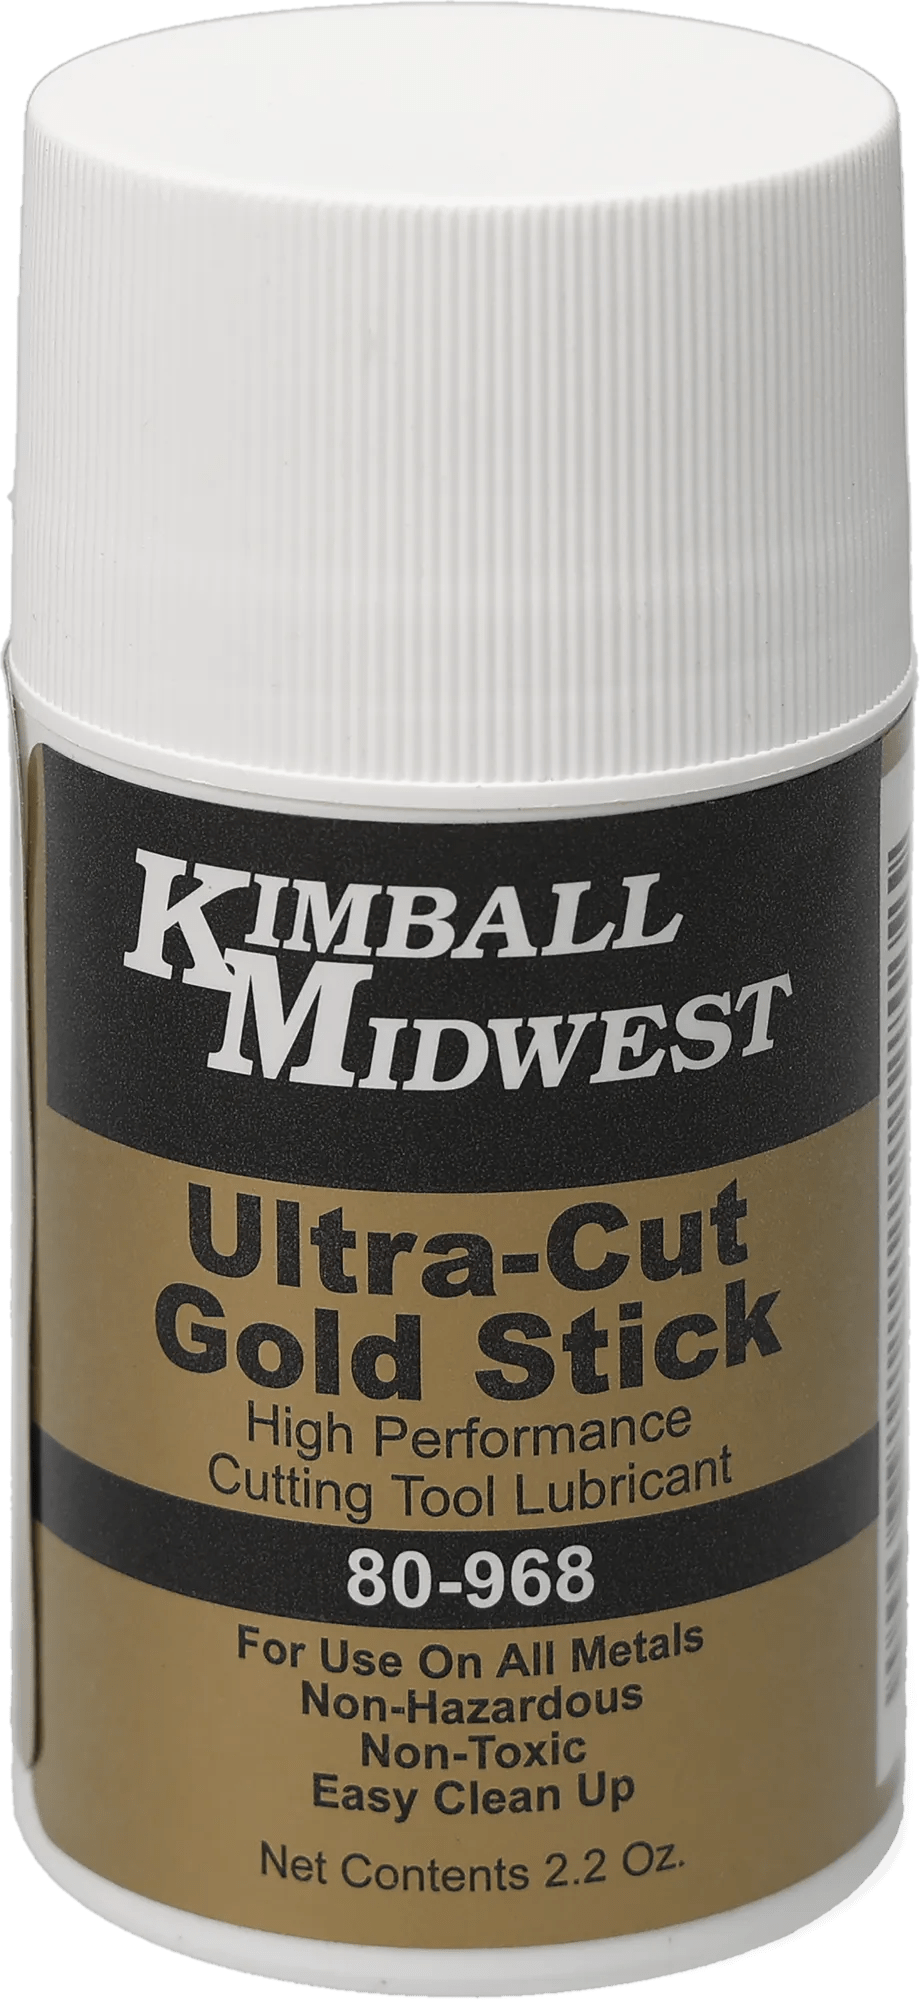 Ultra-Cut Gold Stick